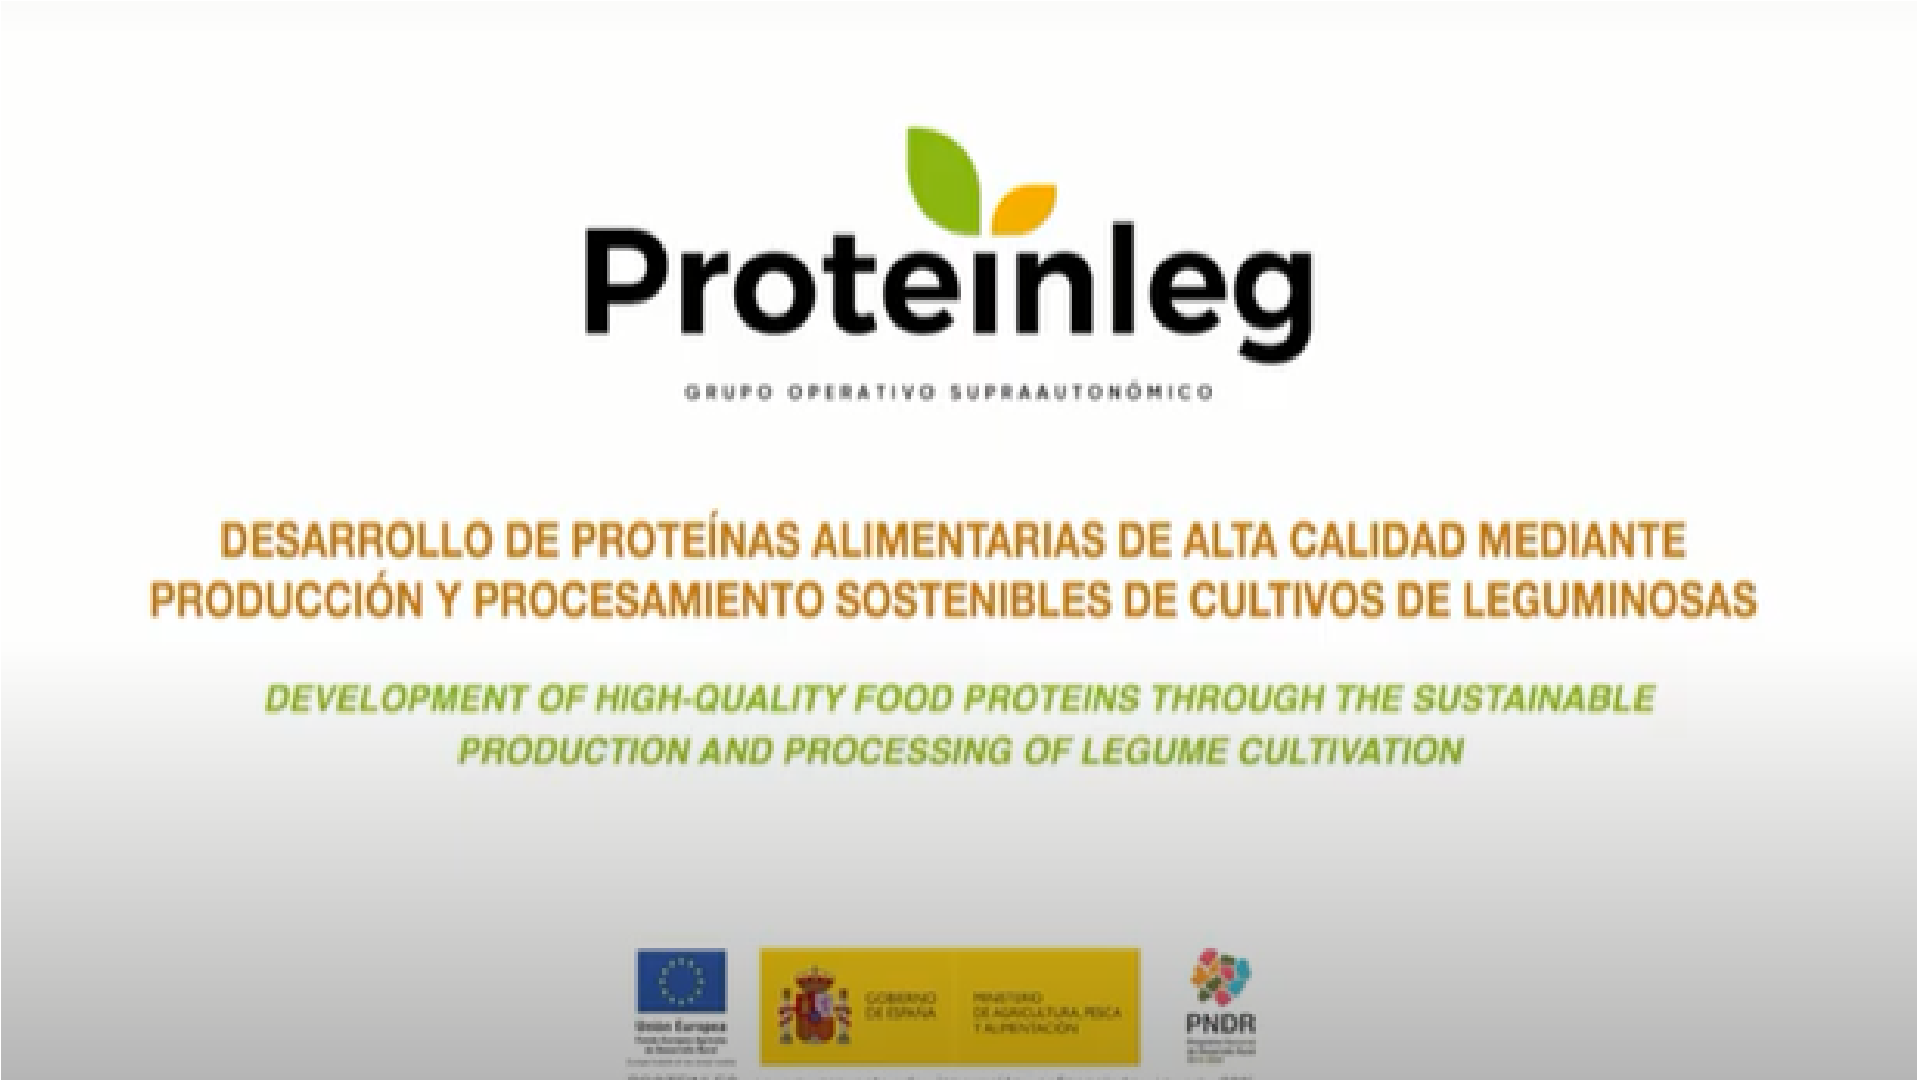 Publicado el audiovisual divulgativo del proyecto Proteinleg